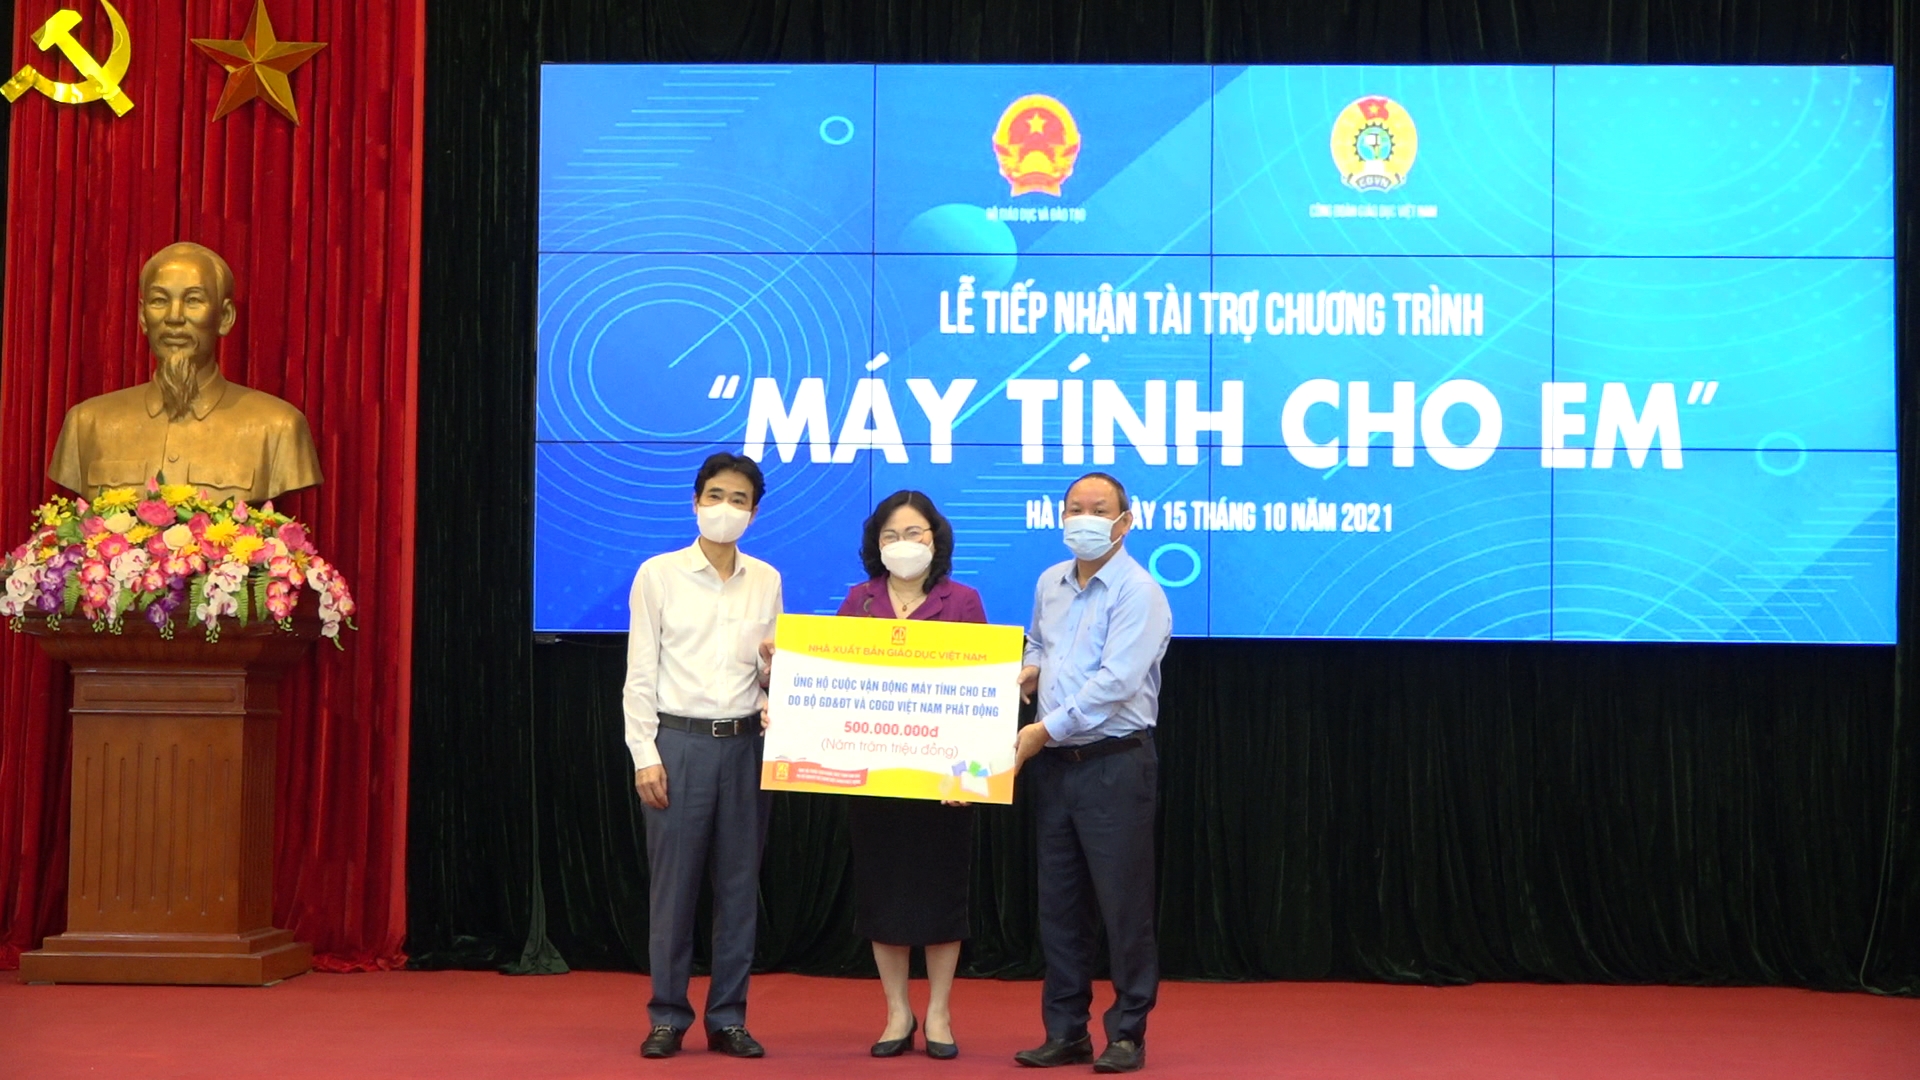 Nhà xuất bản Giáo dục Việt Nam ủng hộ Chương trình “Máy tính cho em"